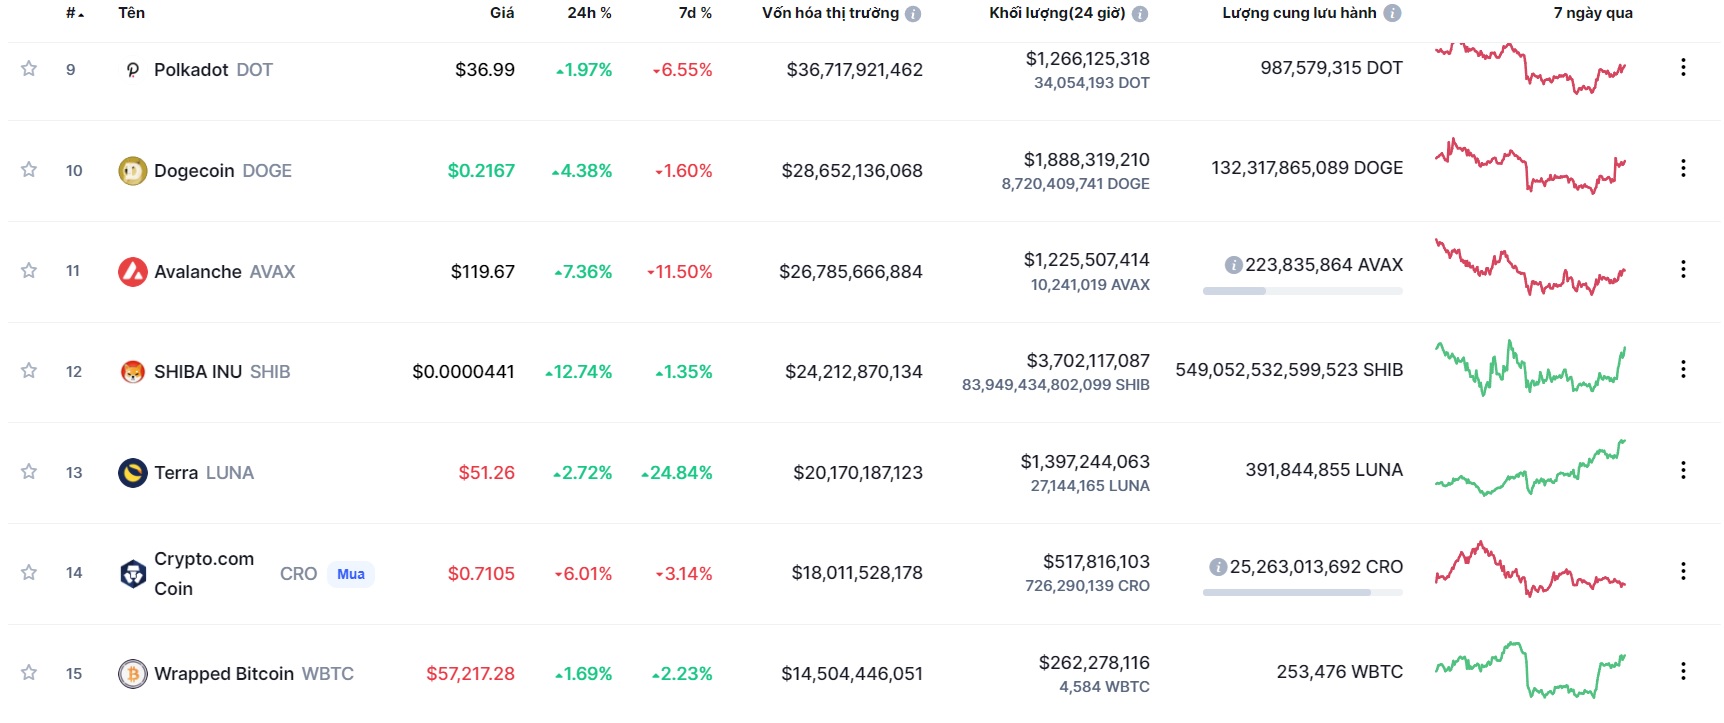 Giá Bitcoin hôm nay 30/11: Màu xanh bao phủ thị trường - Ảnh 1